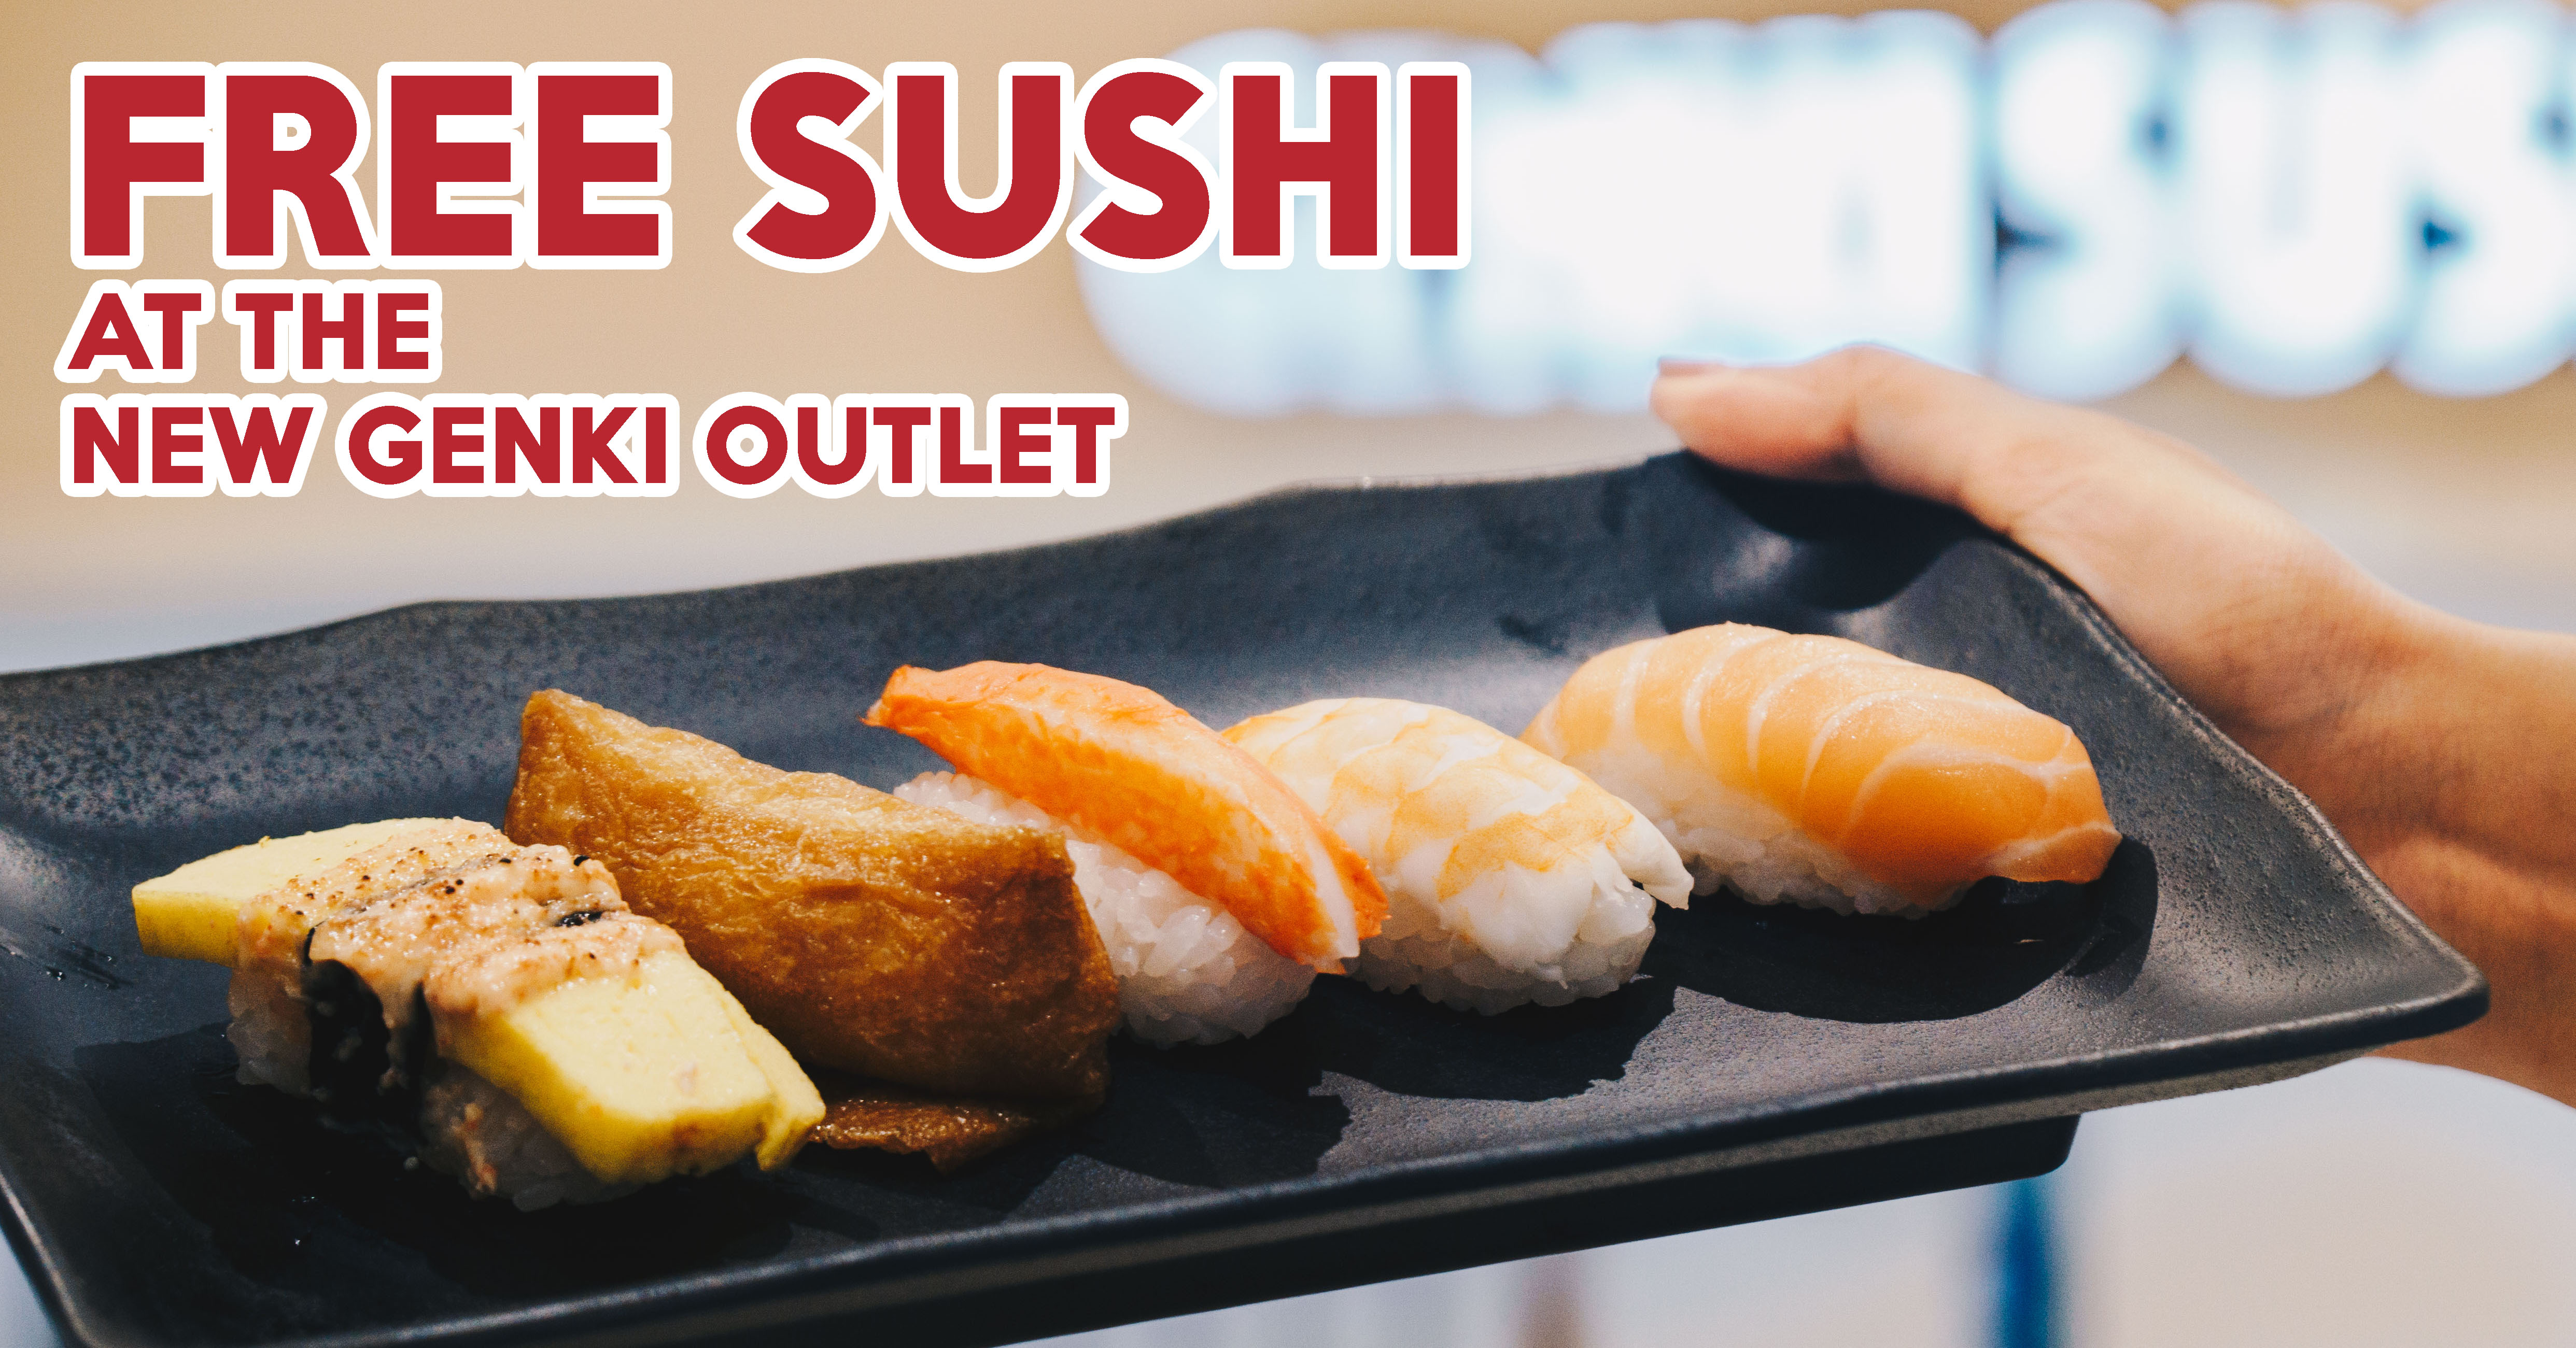 Go outlet sushi Sake House丨Online